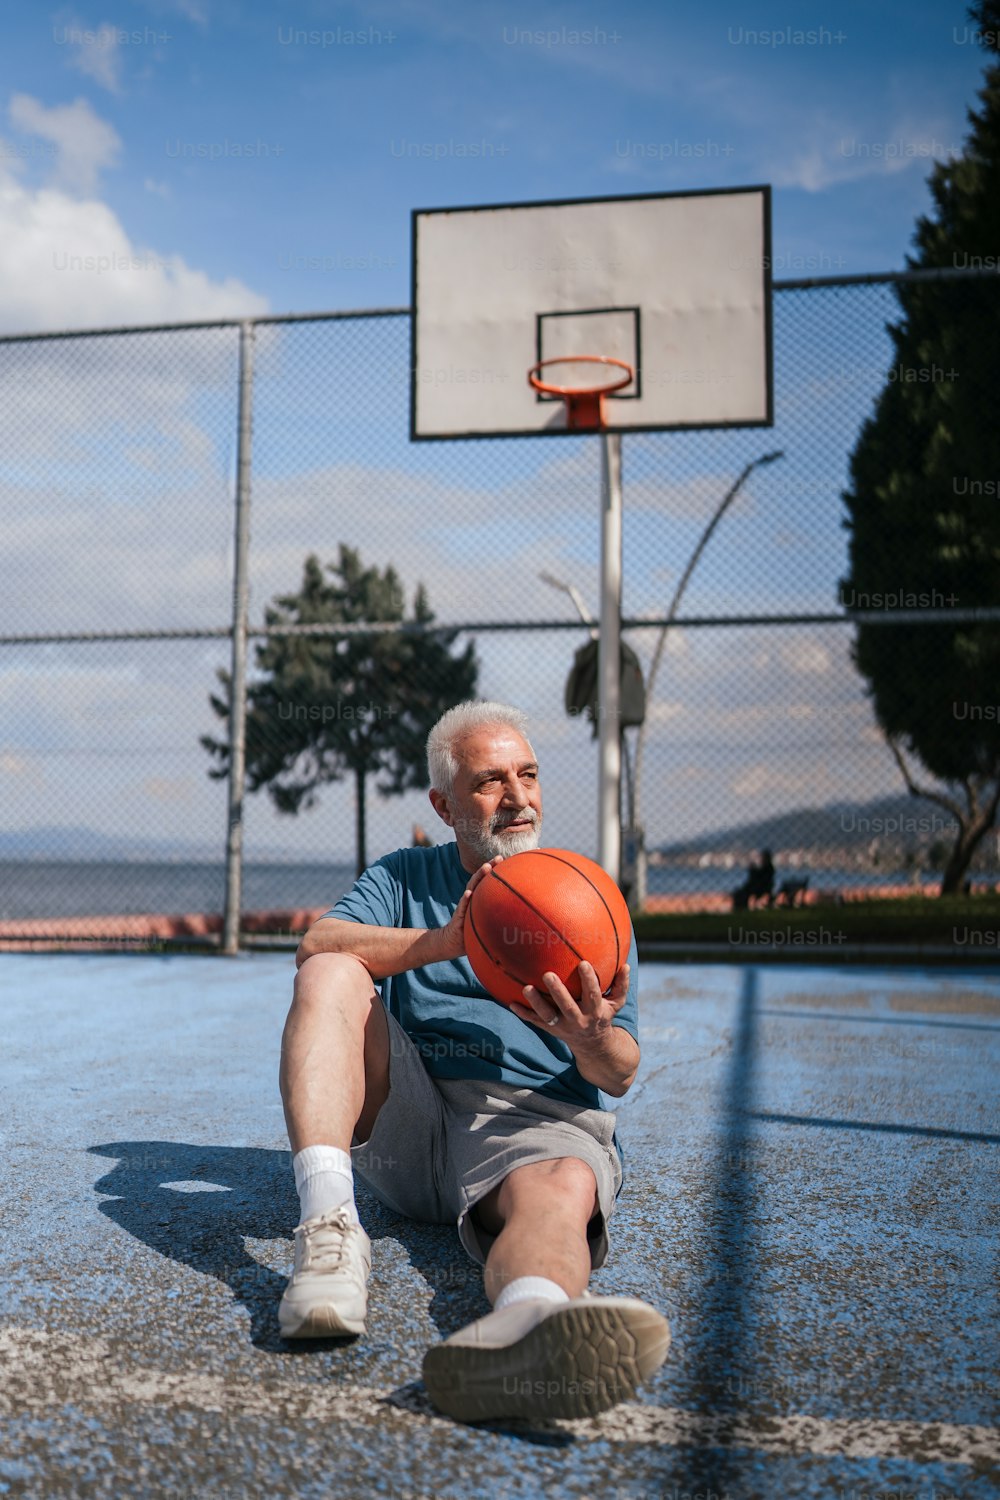 Un hombre sentado en una cancha de baloncesto sosteniendo una pelota de baloncesto